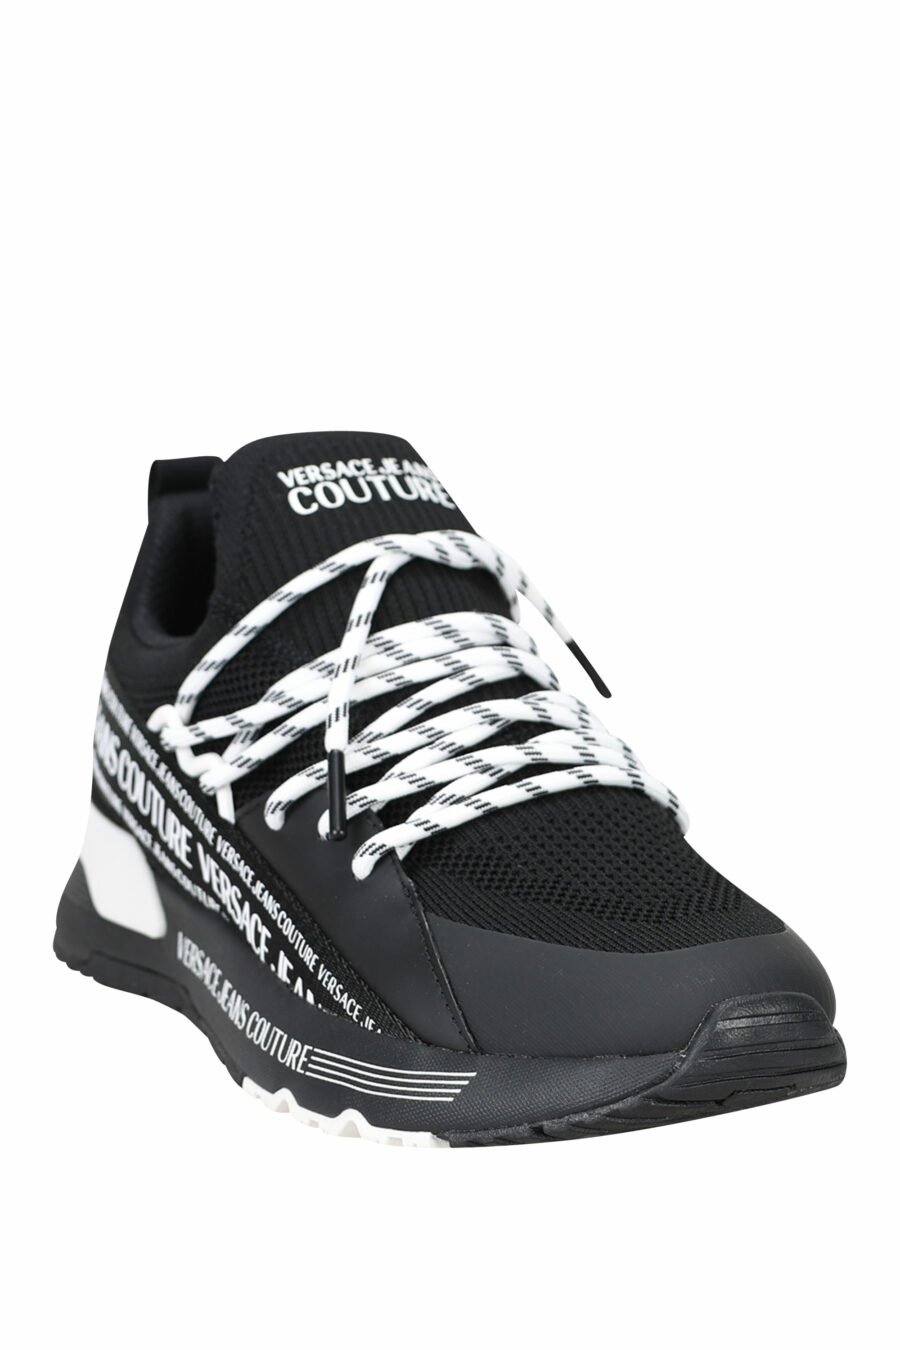 Zapatillas negras "troadlop" con logo en cinta blanco - 8052019454468 2